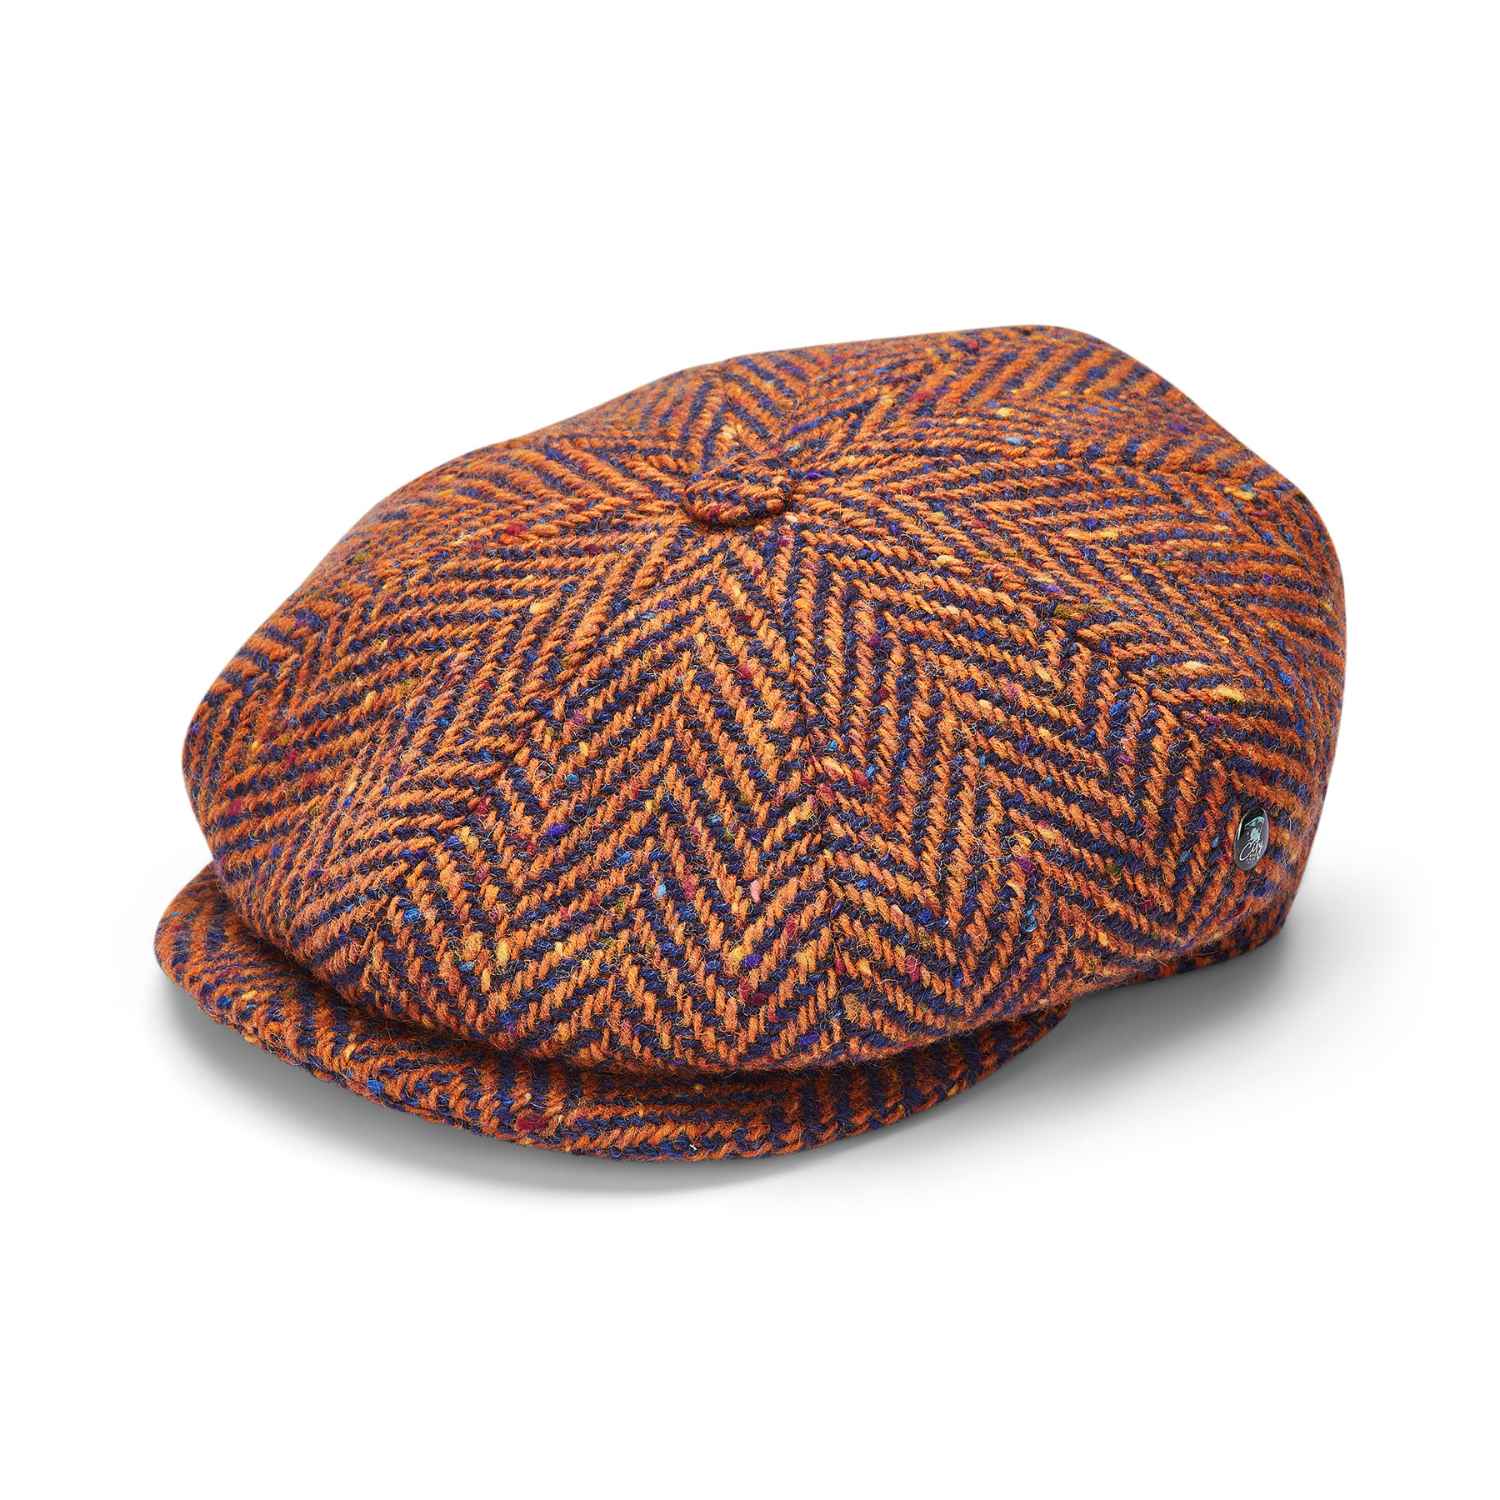 Donegal Tweed Baker Boy Hat by City Sport | Donegal Tweed Cap | Speckled Herringbone